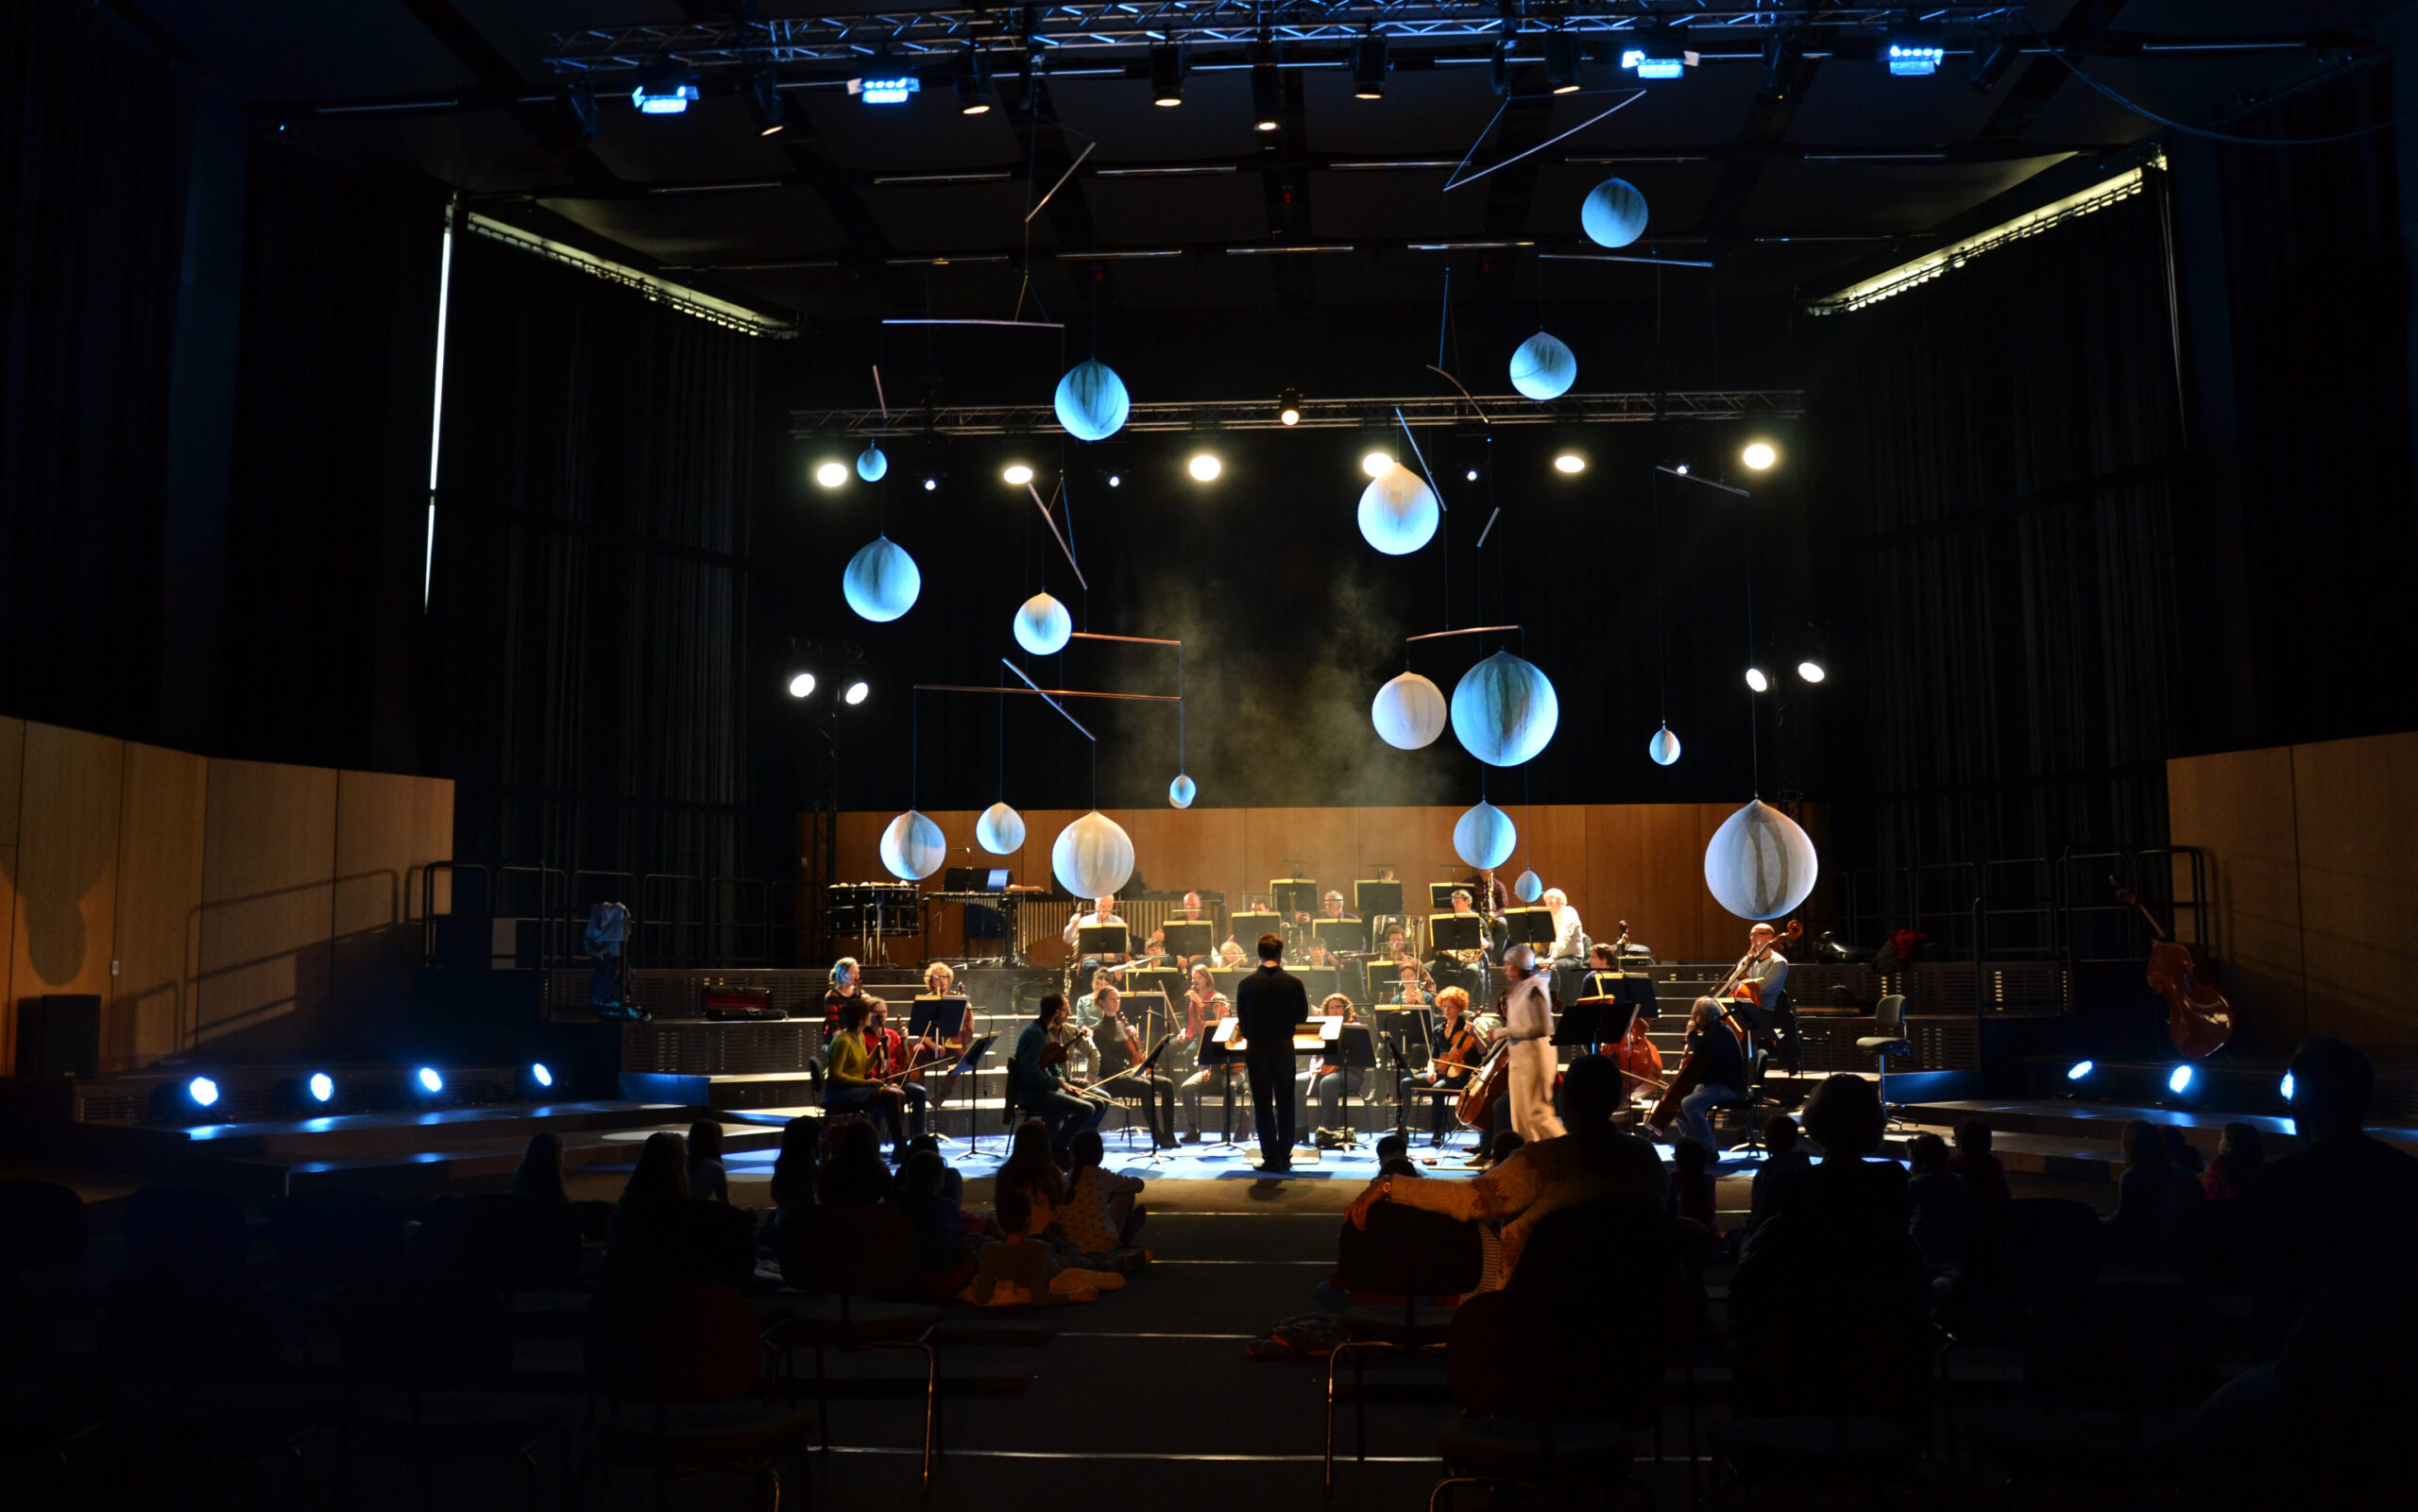 Scénographie de Mathilde Cordier sur le spectacle Le voleur de mélodie de l'orchestre philharmonique de Strasbourg